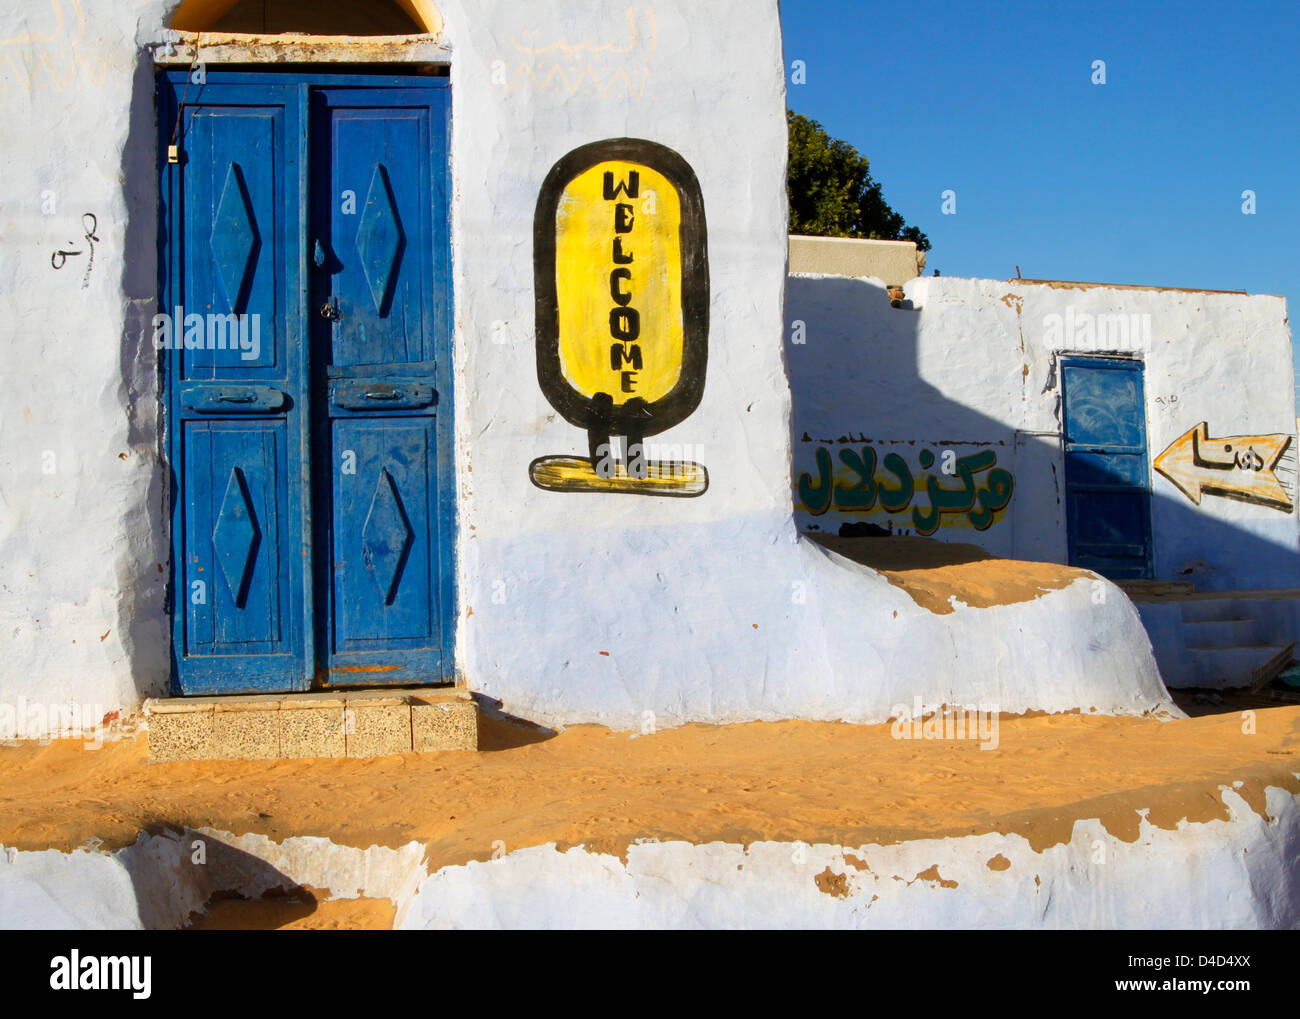 Portes ornementales dans un village nubien près d'Assouan, Egypte Banque D'Images